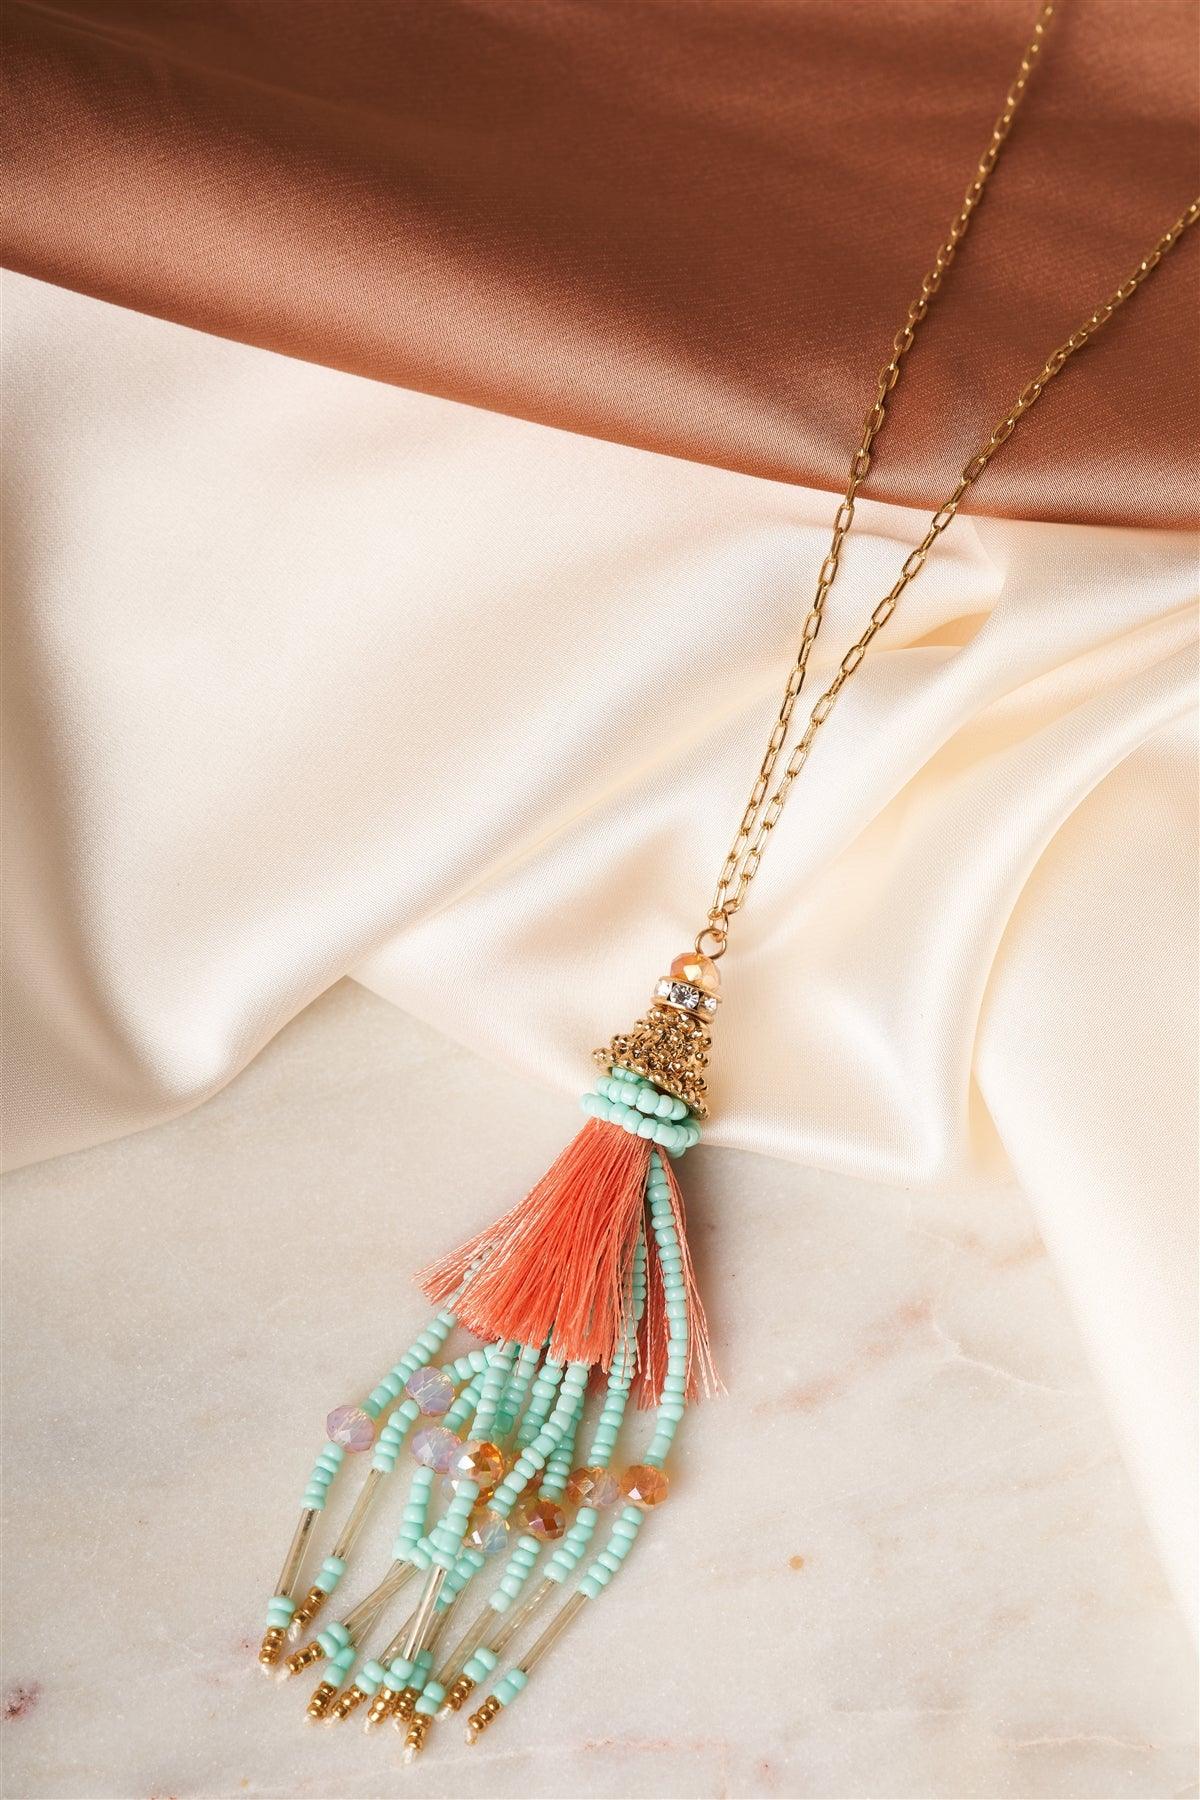 Celeste Peach Mixed Beads Tassel Pendant Necklace /1 Piece